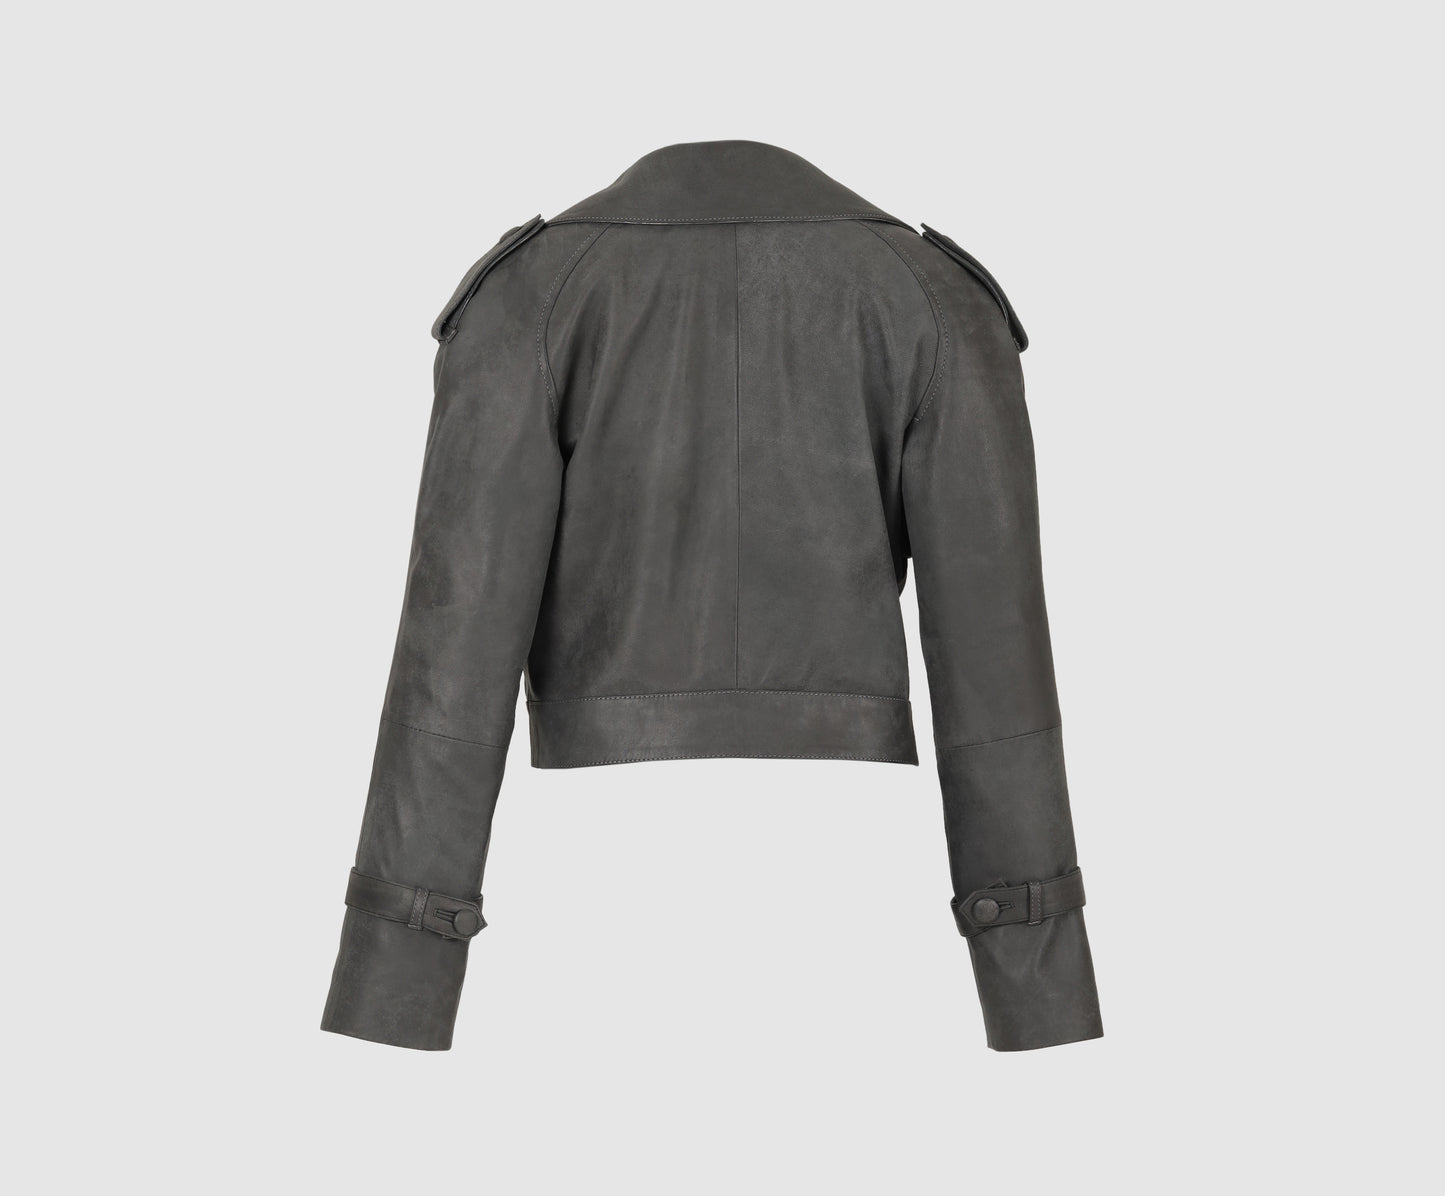 Audax Leather Jacket Washed Grey